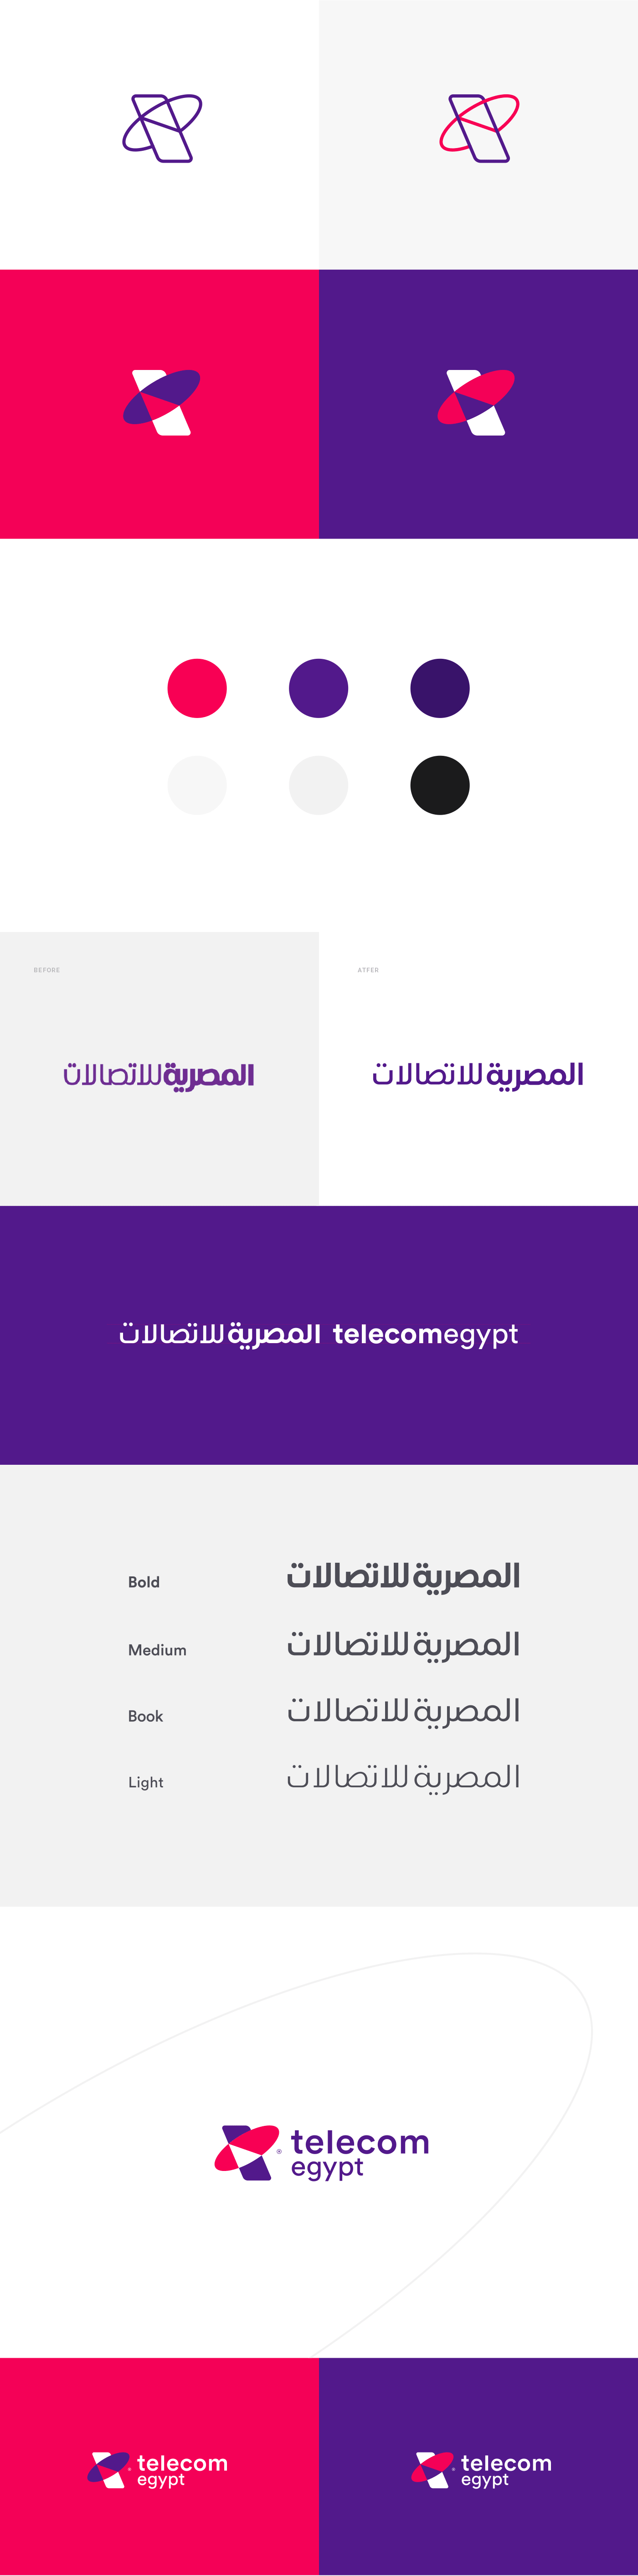 Telecom egypt telecom egypt logo rebranding redesign